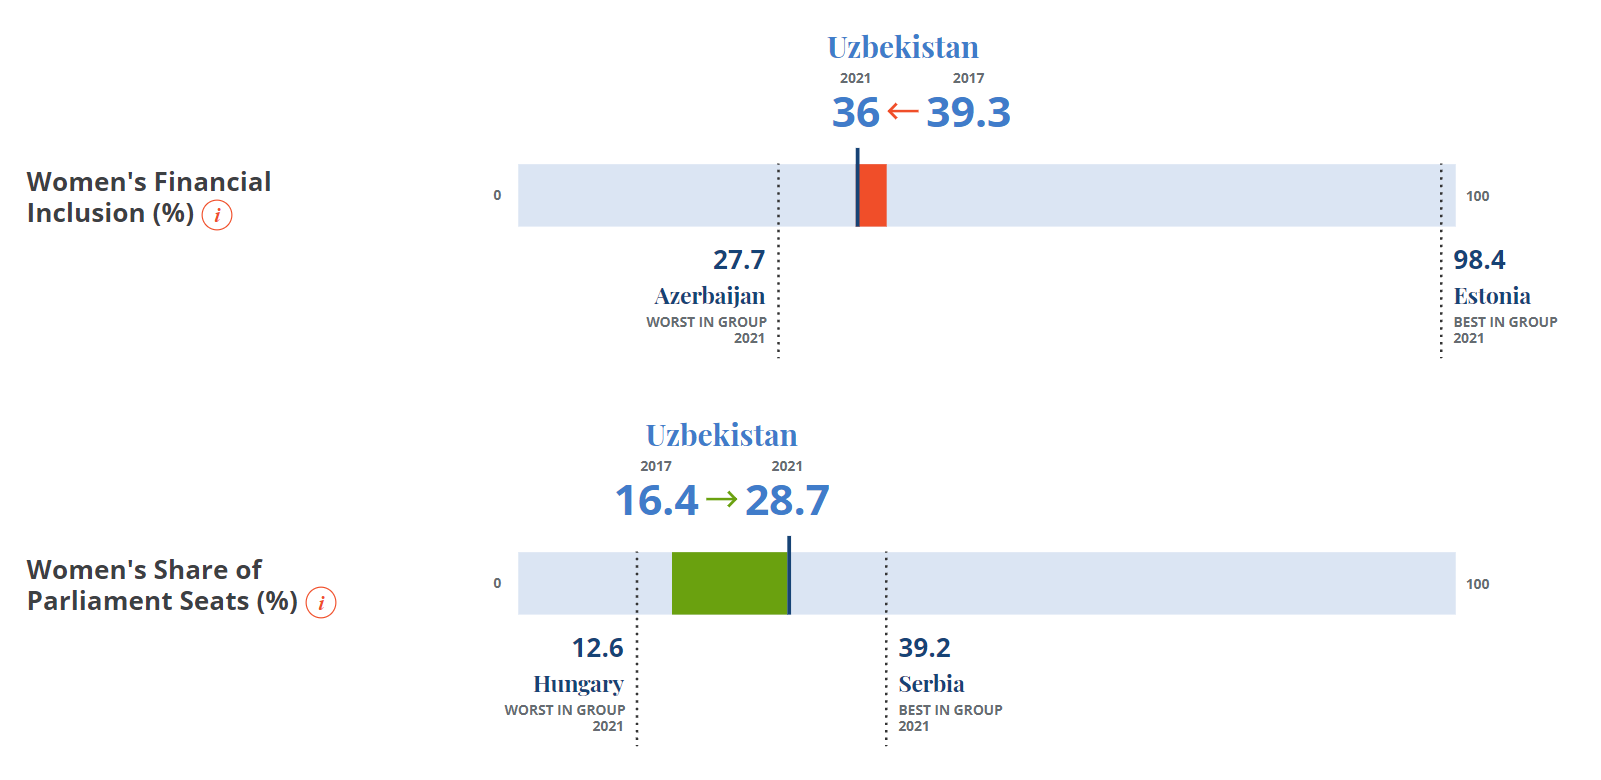 В Узбекистане увеличилась доля женщин в парламенте по сравнению с 2017 годом с 16,4% до 28,7%. Однако показатель финансовой включённости женщин тем временем снизился с 39,3% в 2017 до 36% в 2021 году.